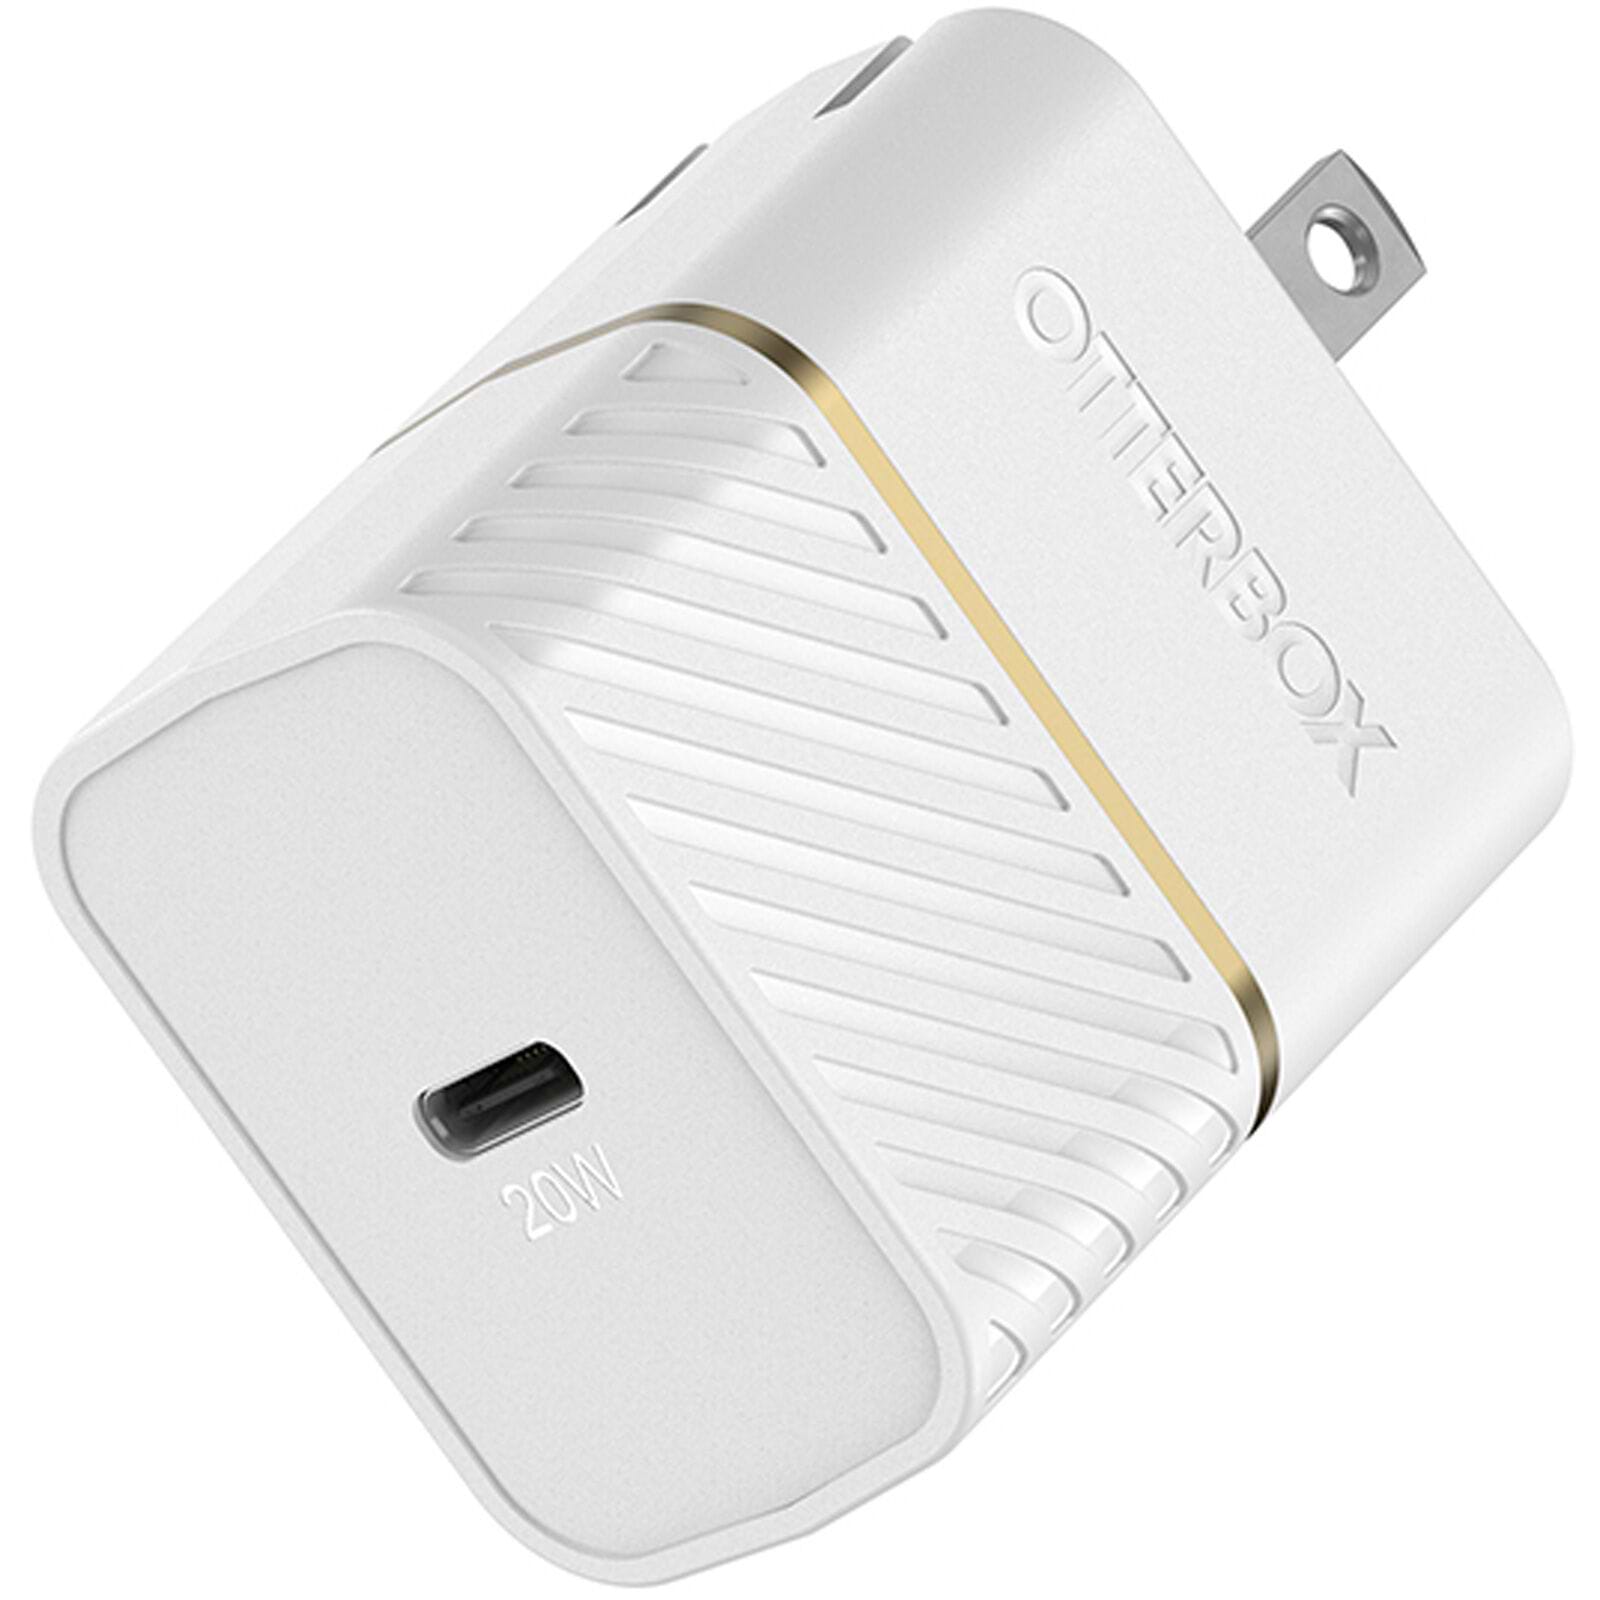 מטען בית OTTERBOX PREMIUM דגם USB-C 20W+כבל LIGHTHNING לבן